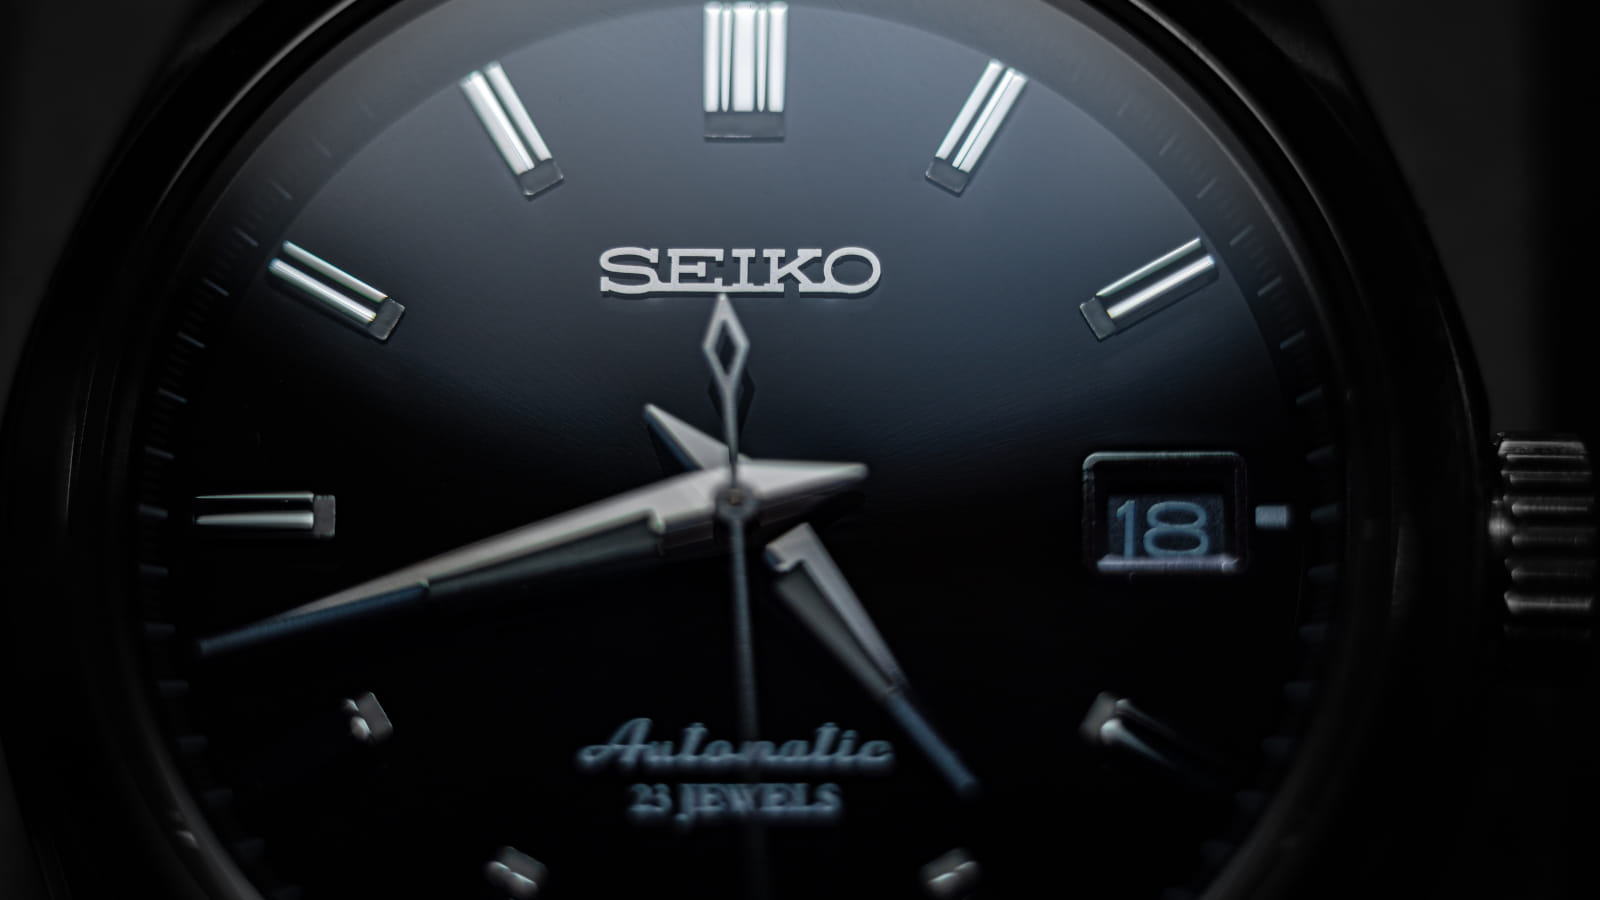 A black Seiko watch.